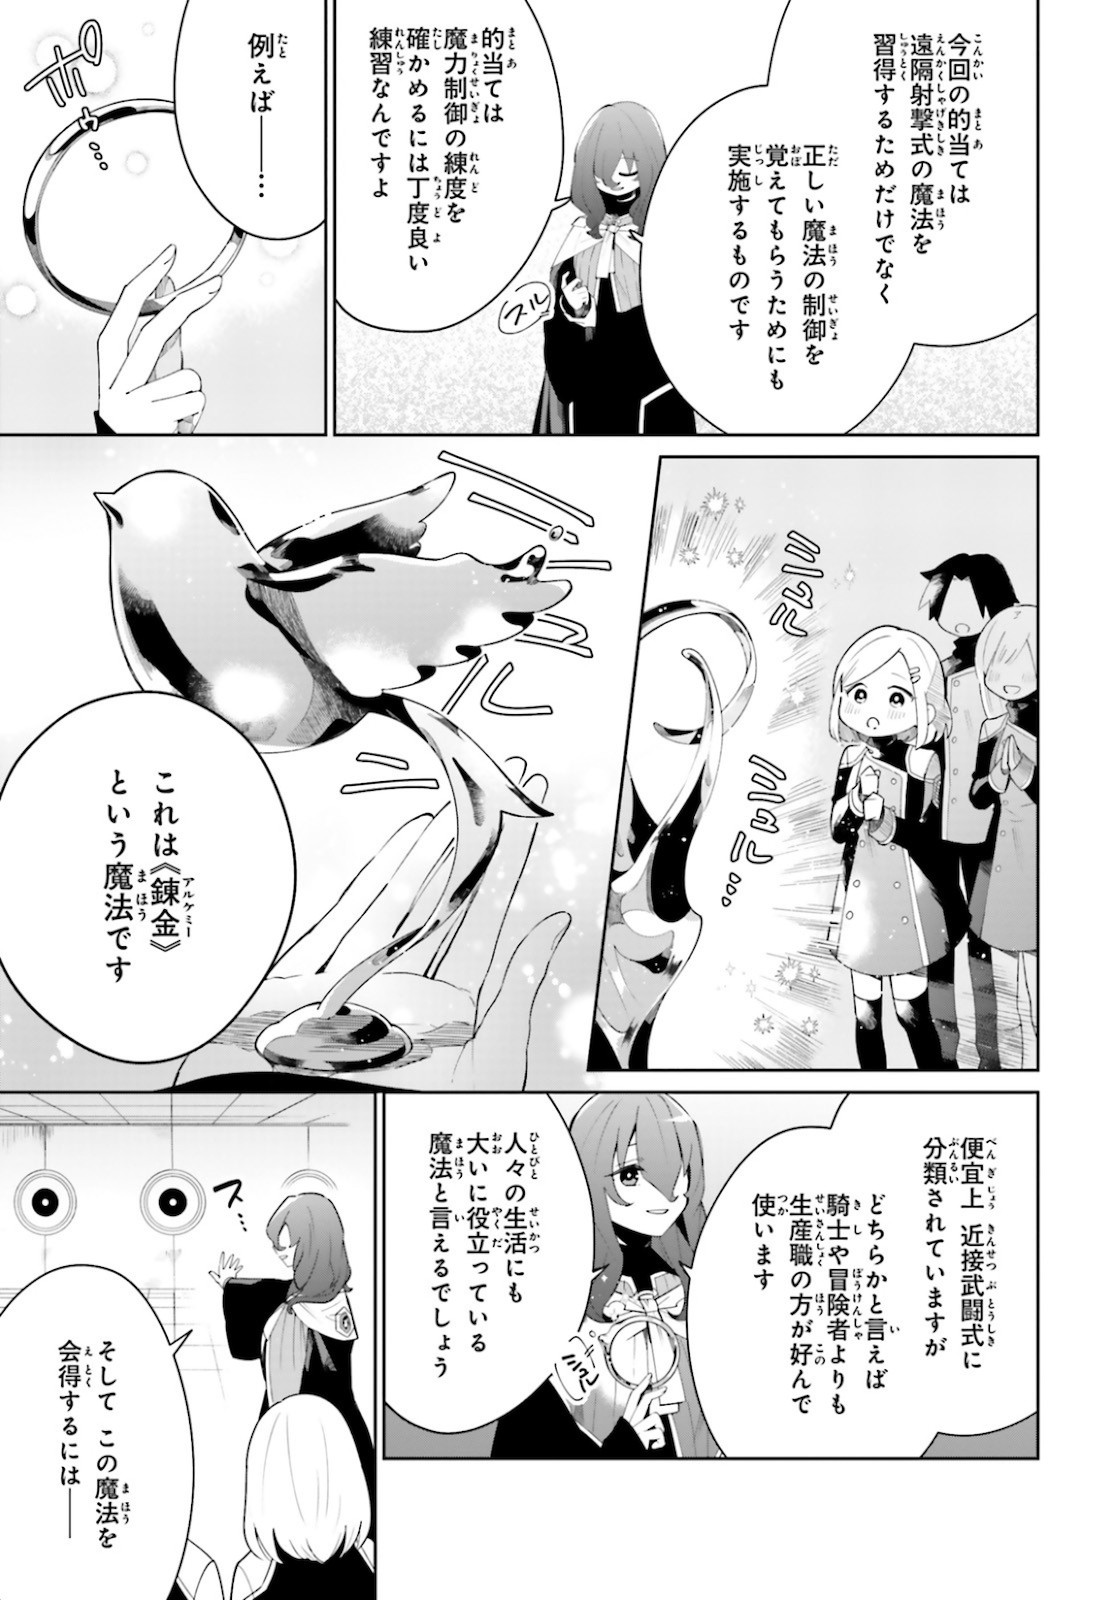 Kage-no-Eiyuu-no-Nichijou-tan-Ichi-no-Yuusha-no-Ura-de-An'yaku-Shite-ita-Saikyou-no-Eijento-Soshiki-ga-Kaitai-sareta-no-de-Shoutai-Kakushite-Hito-nami-no-Nichijou-o-Ouka-suru - Chapter 04 - Page 3